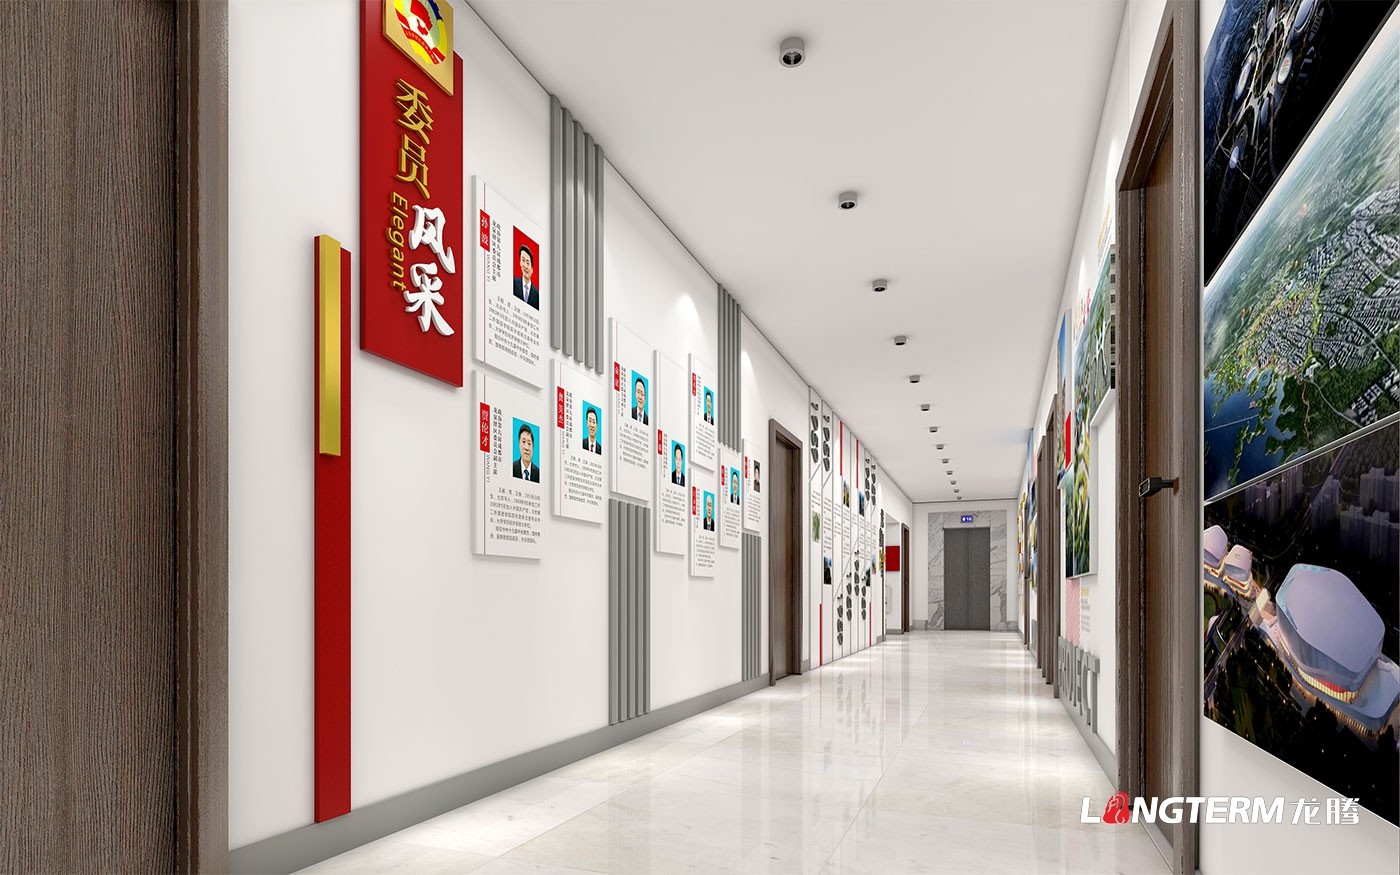 乐山教育局(教育厅)走廊过道大厅文化墙设计_法治文化阵地实施方案_党政红色文化上墙设计